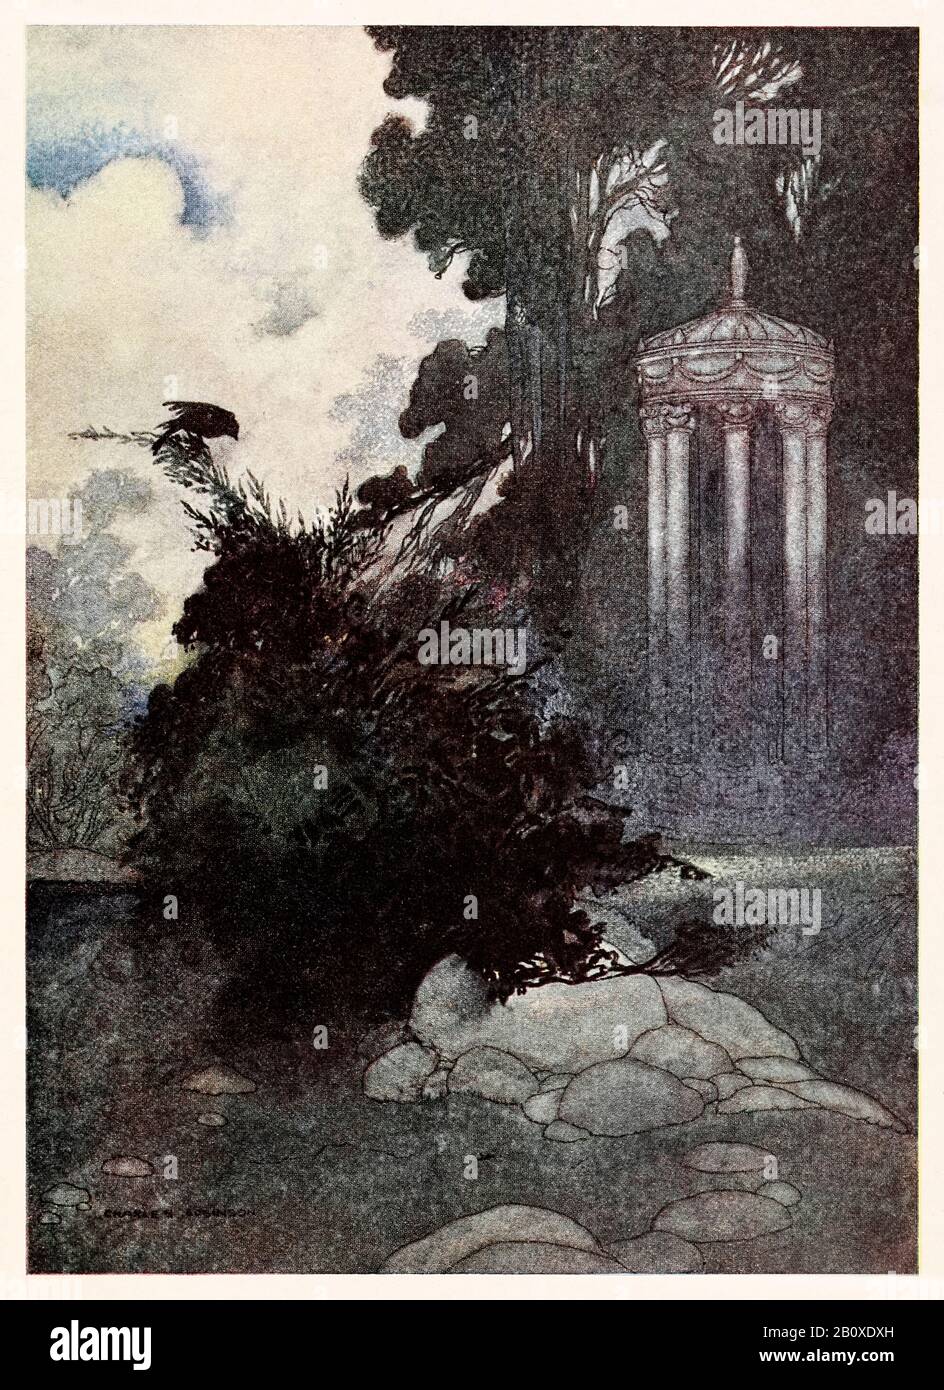 "Le linnet vert" de "L'ami Dévoué" dans Le Prince Heureux et D'Autres Tales d'Oscar Wilde (1854-1900) illustré par Charles Robinson (1870-1937). Voir plus d'informations ci-dessous. Banque D'Images